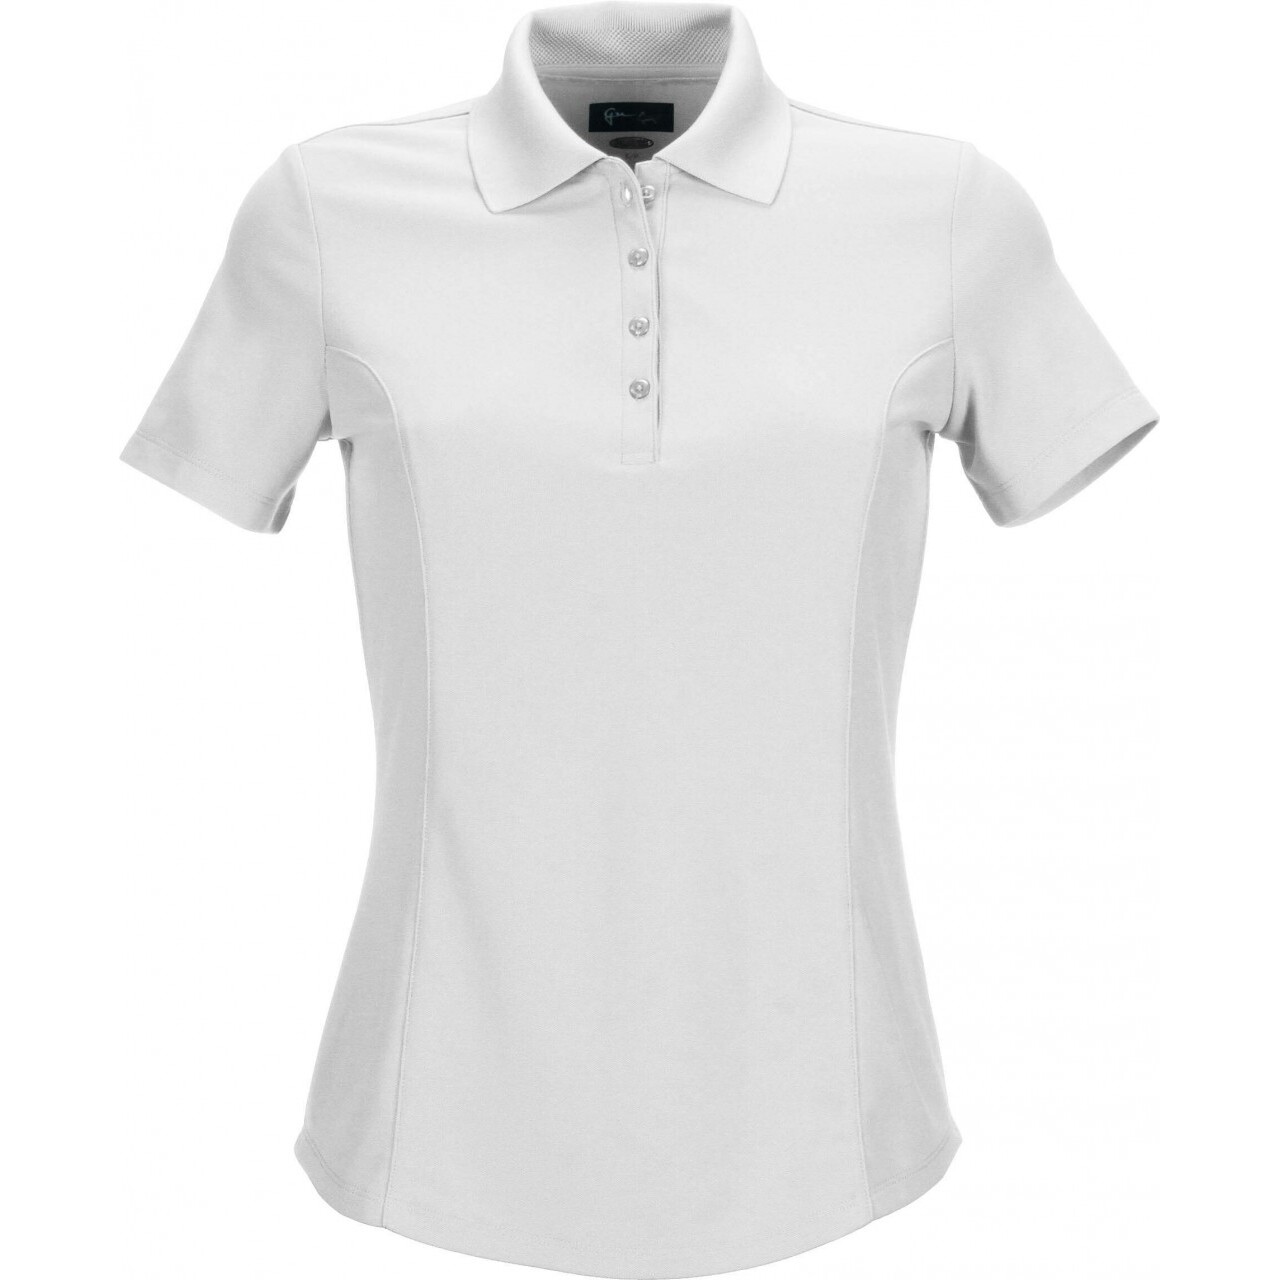 Women's polo shirt Greg Norman micro pique